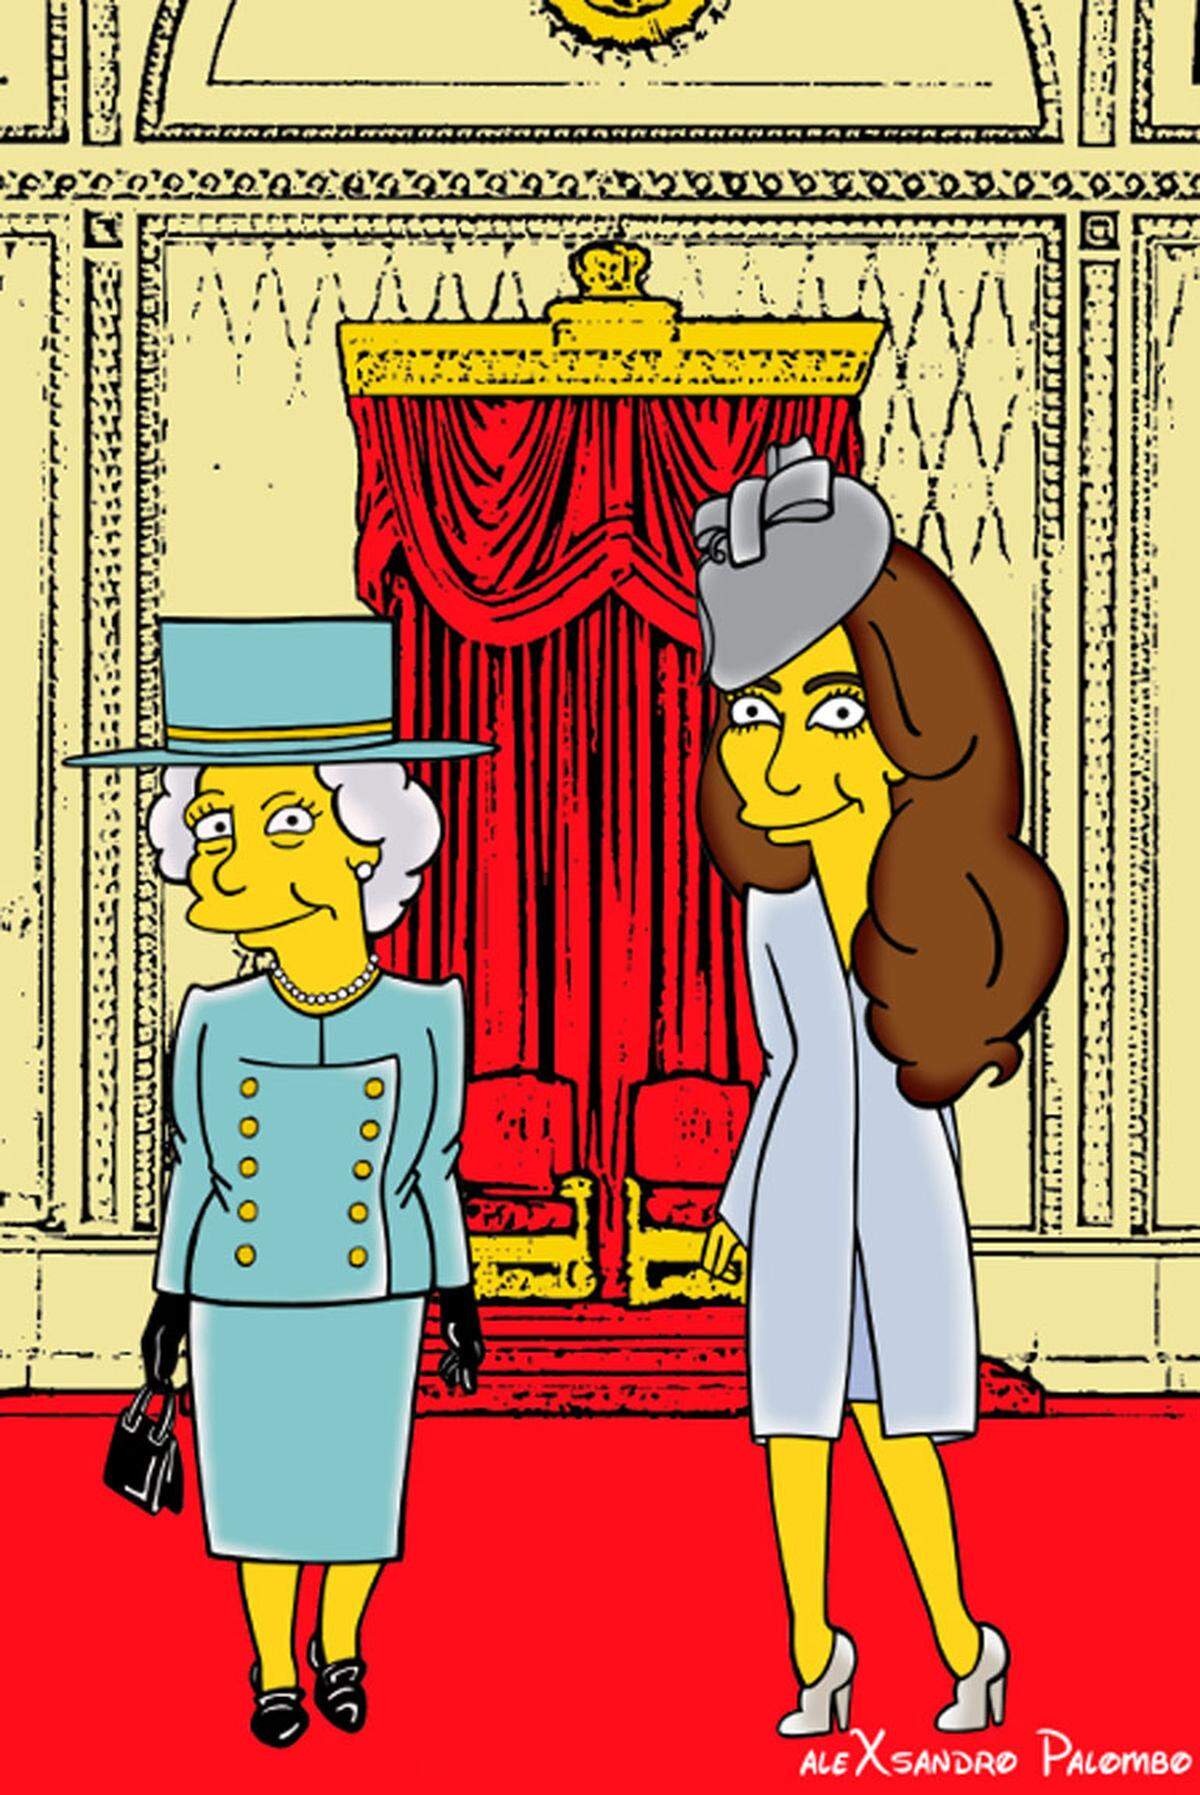 Auch Queen Elizabeth II macht ganz in Gelb neben der Herzogin eine gute Figur.